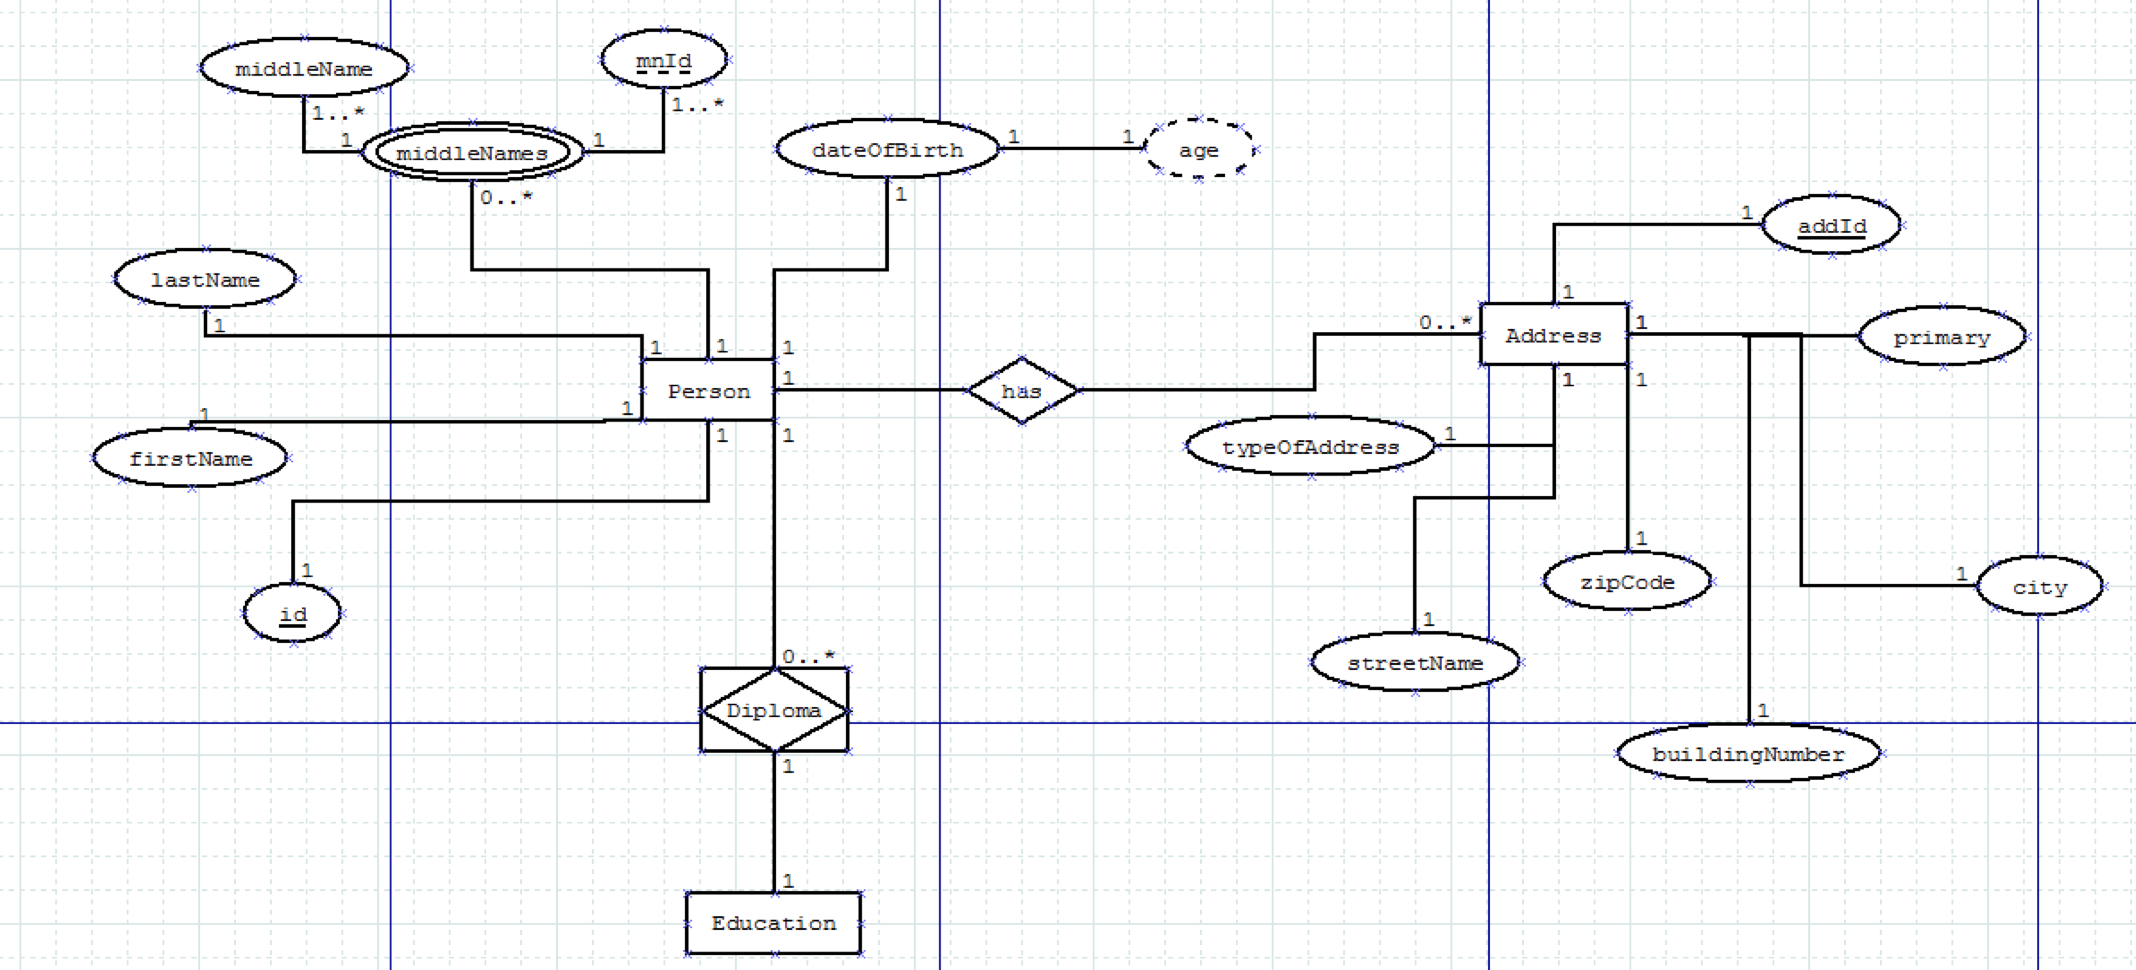 Er Diagram Explained - Stack Overflow for Er Diagram Introduction